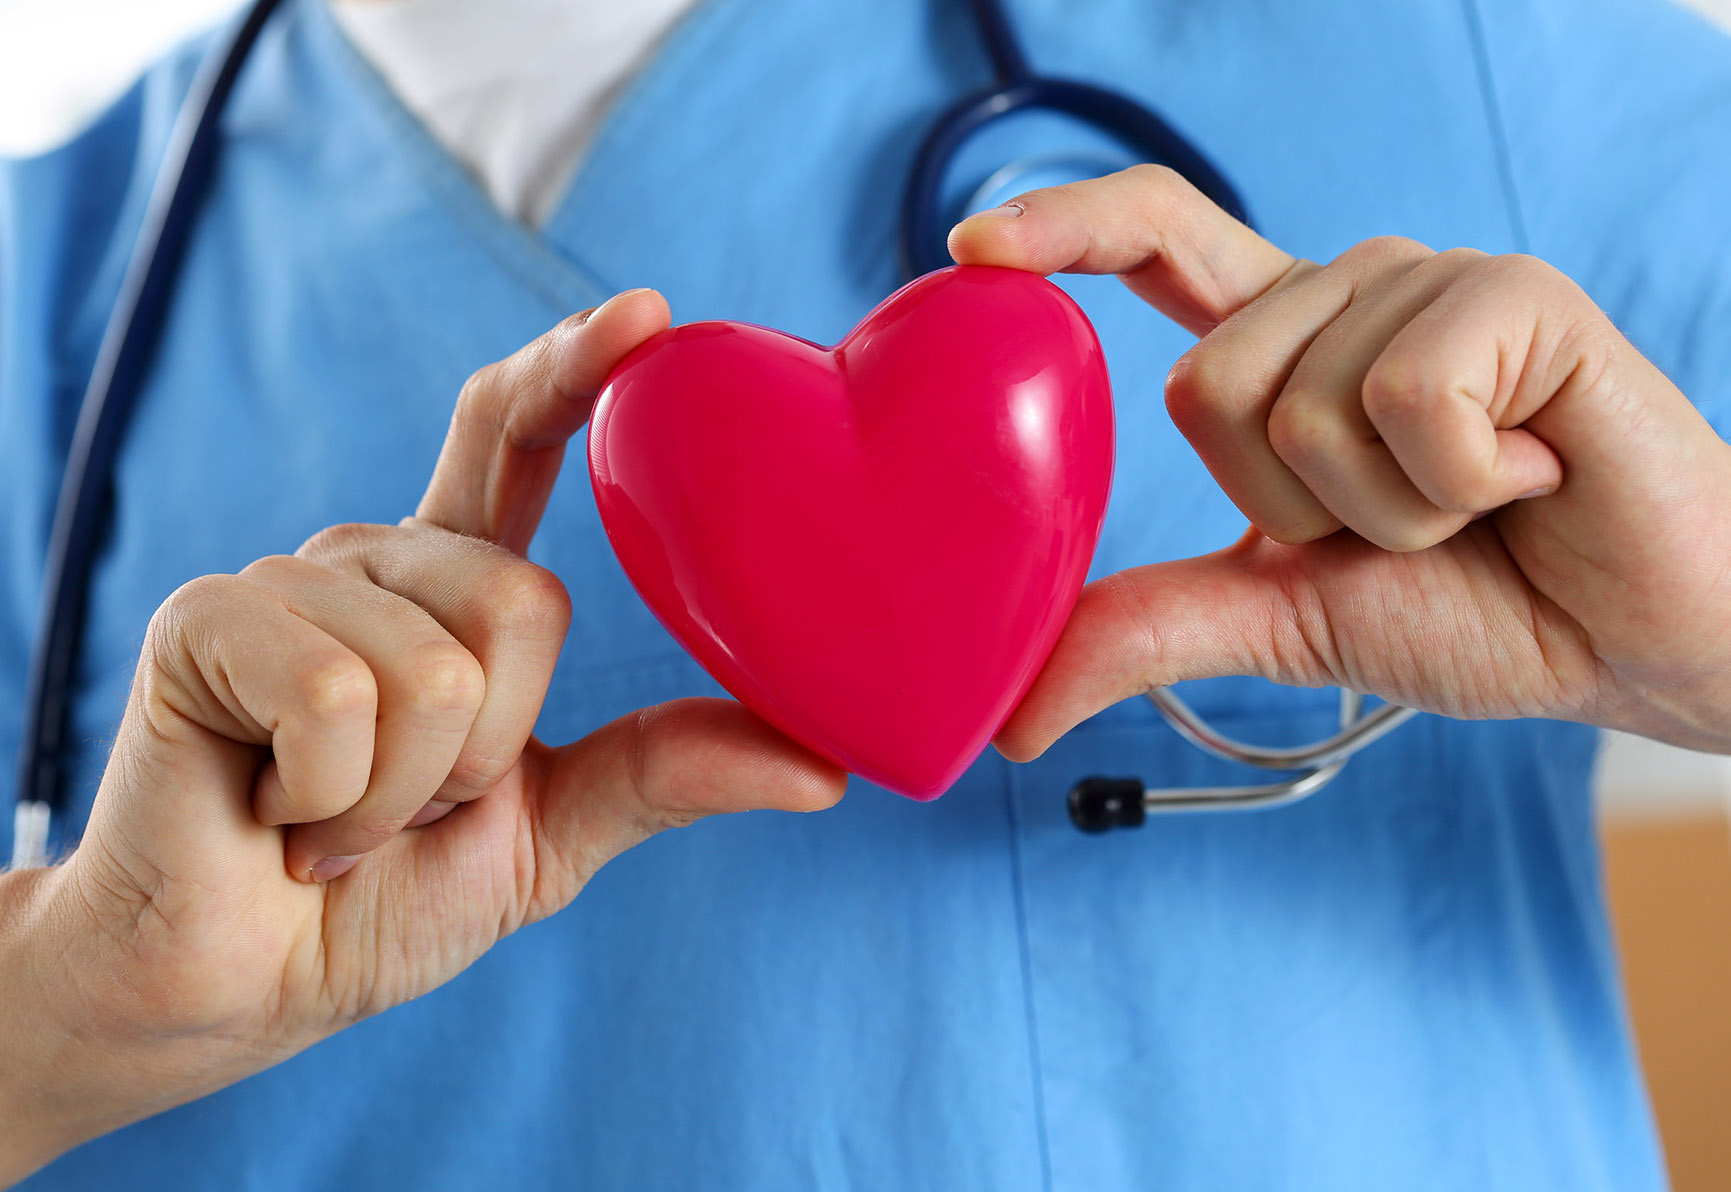 Le cœur : centre de notre santé